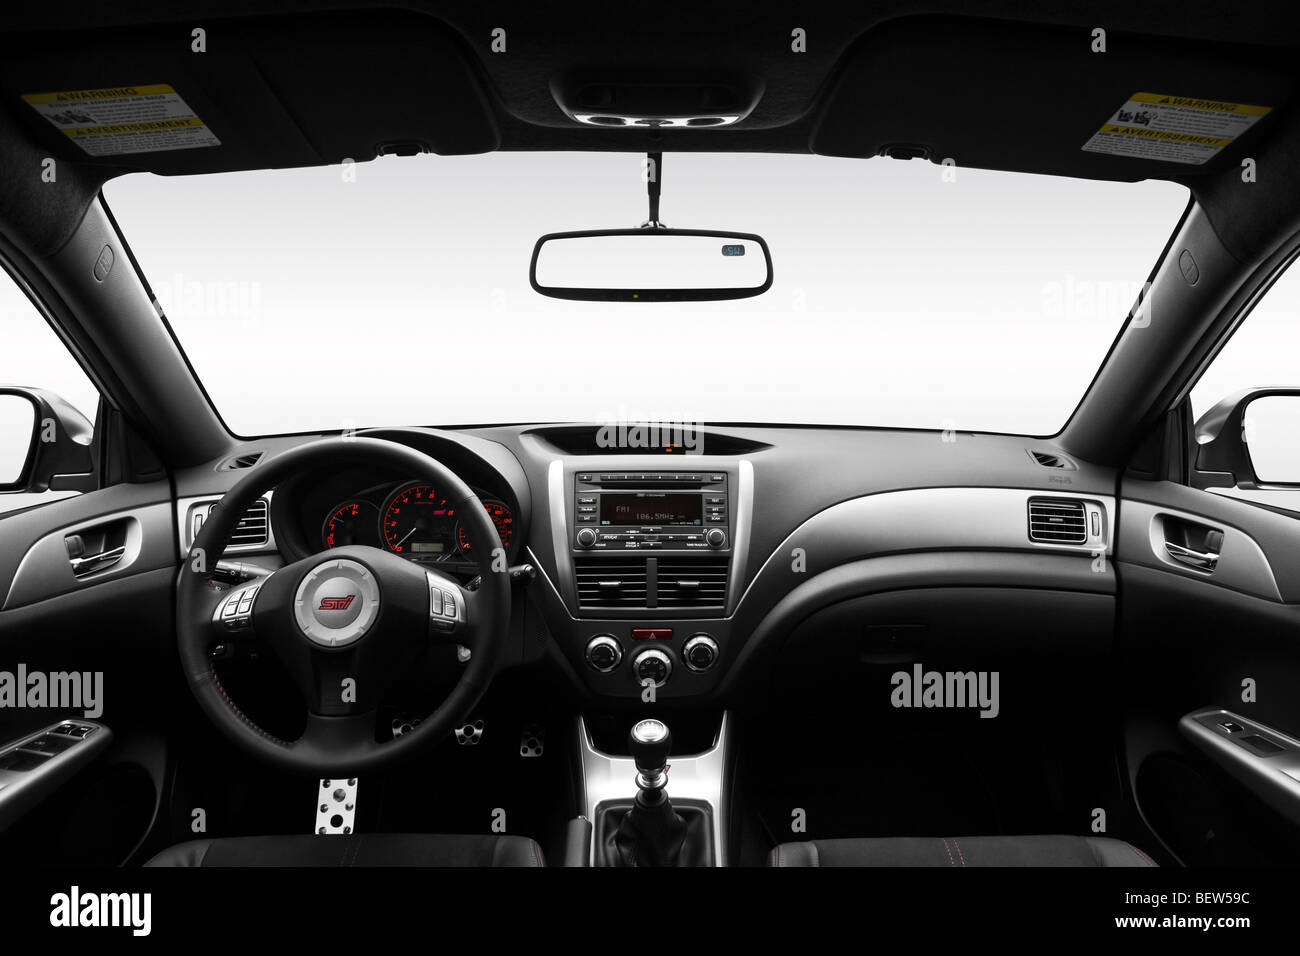 2010 Subaru Impreza WRX STI in Silver - Dashboard, center console, gear shifter view Stock Photo